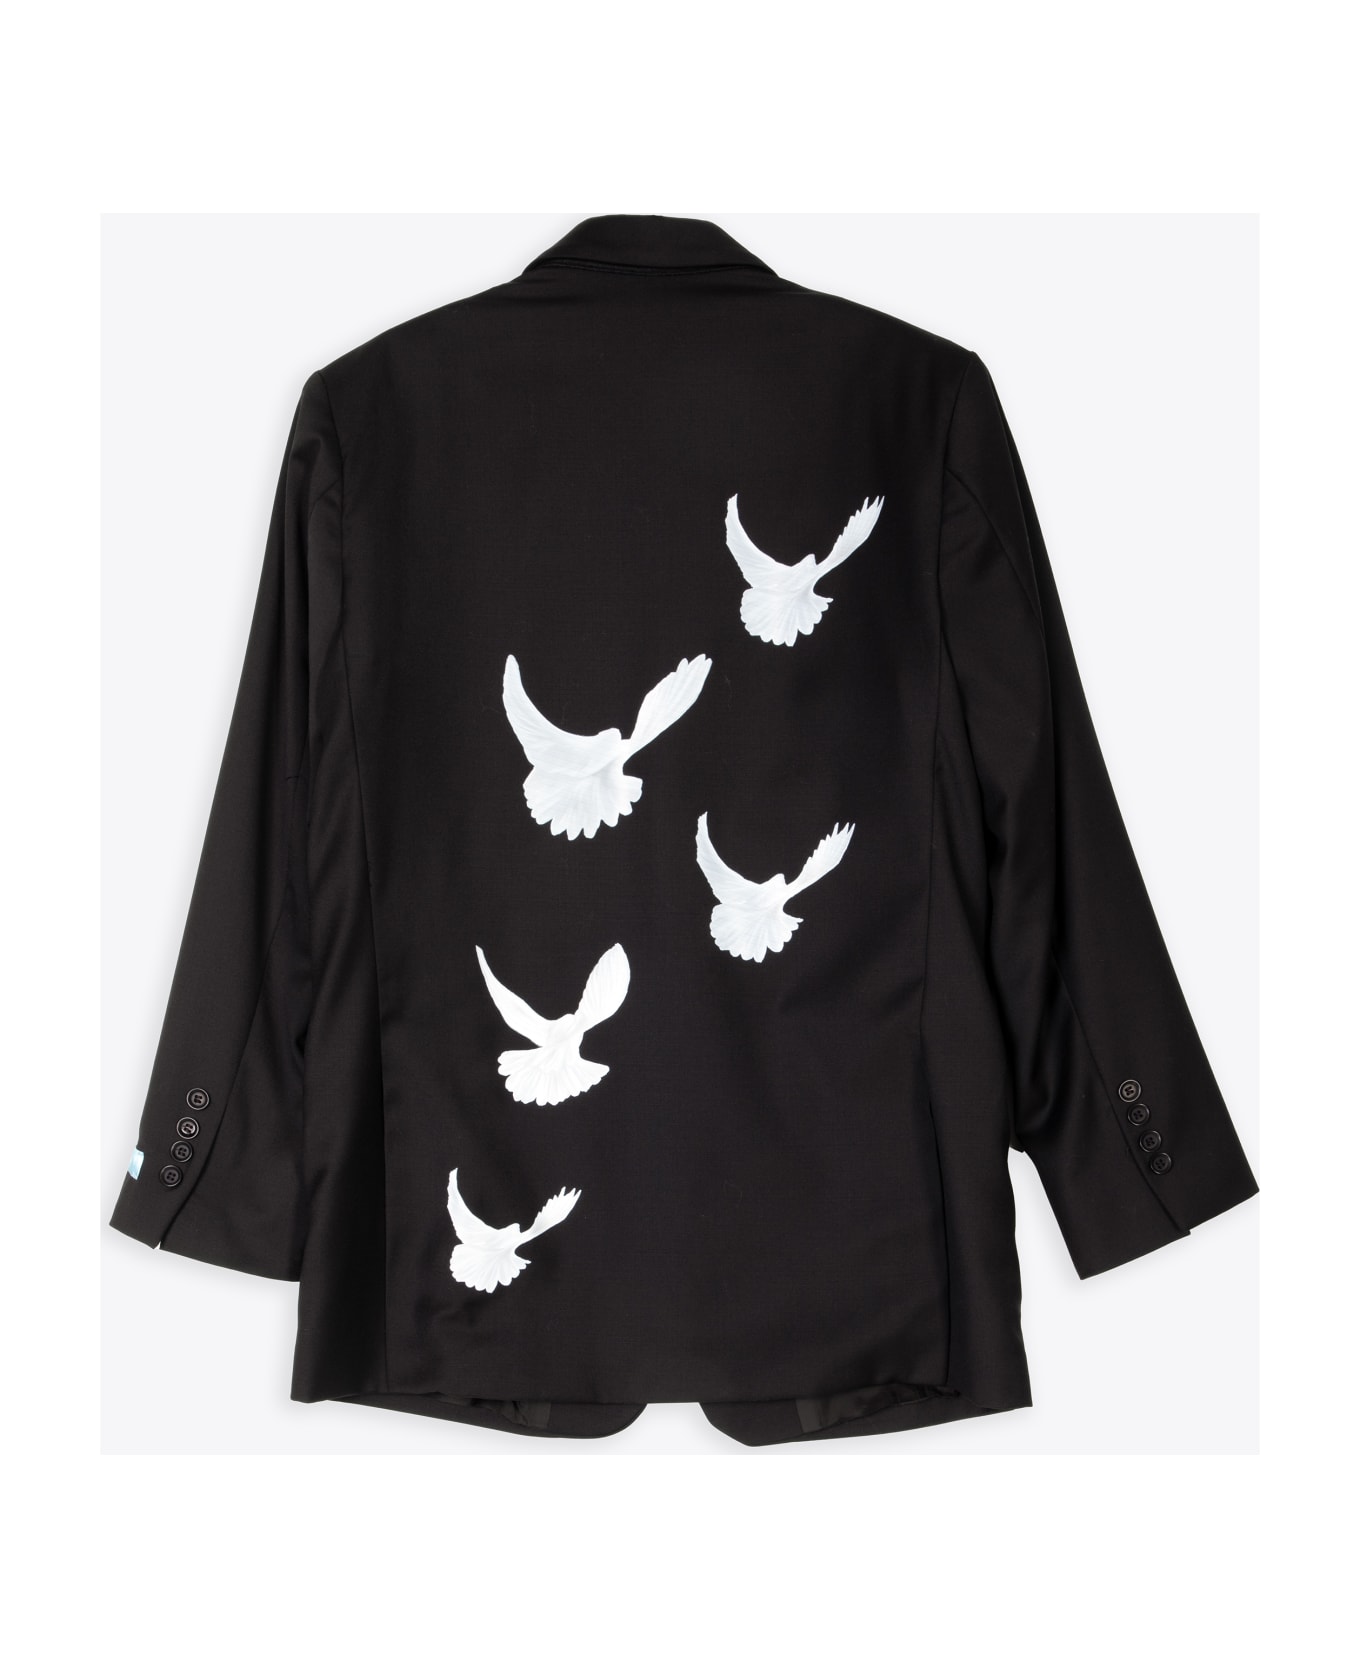 3.Paradis Wool Blazer 'singing Doves' Black wool tailored blazer with doves print - Singing doves blazer - Nero